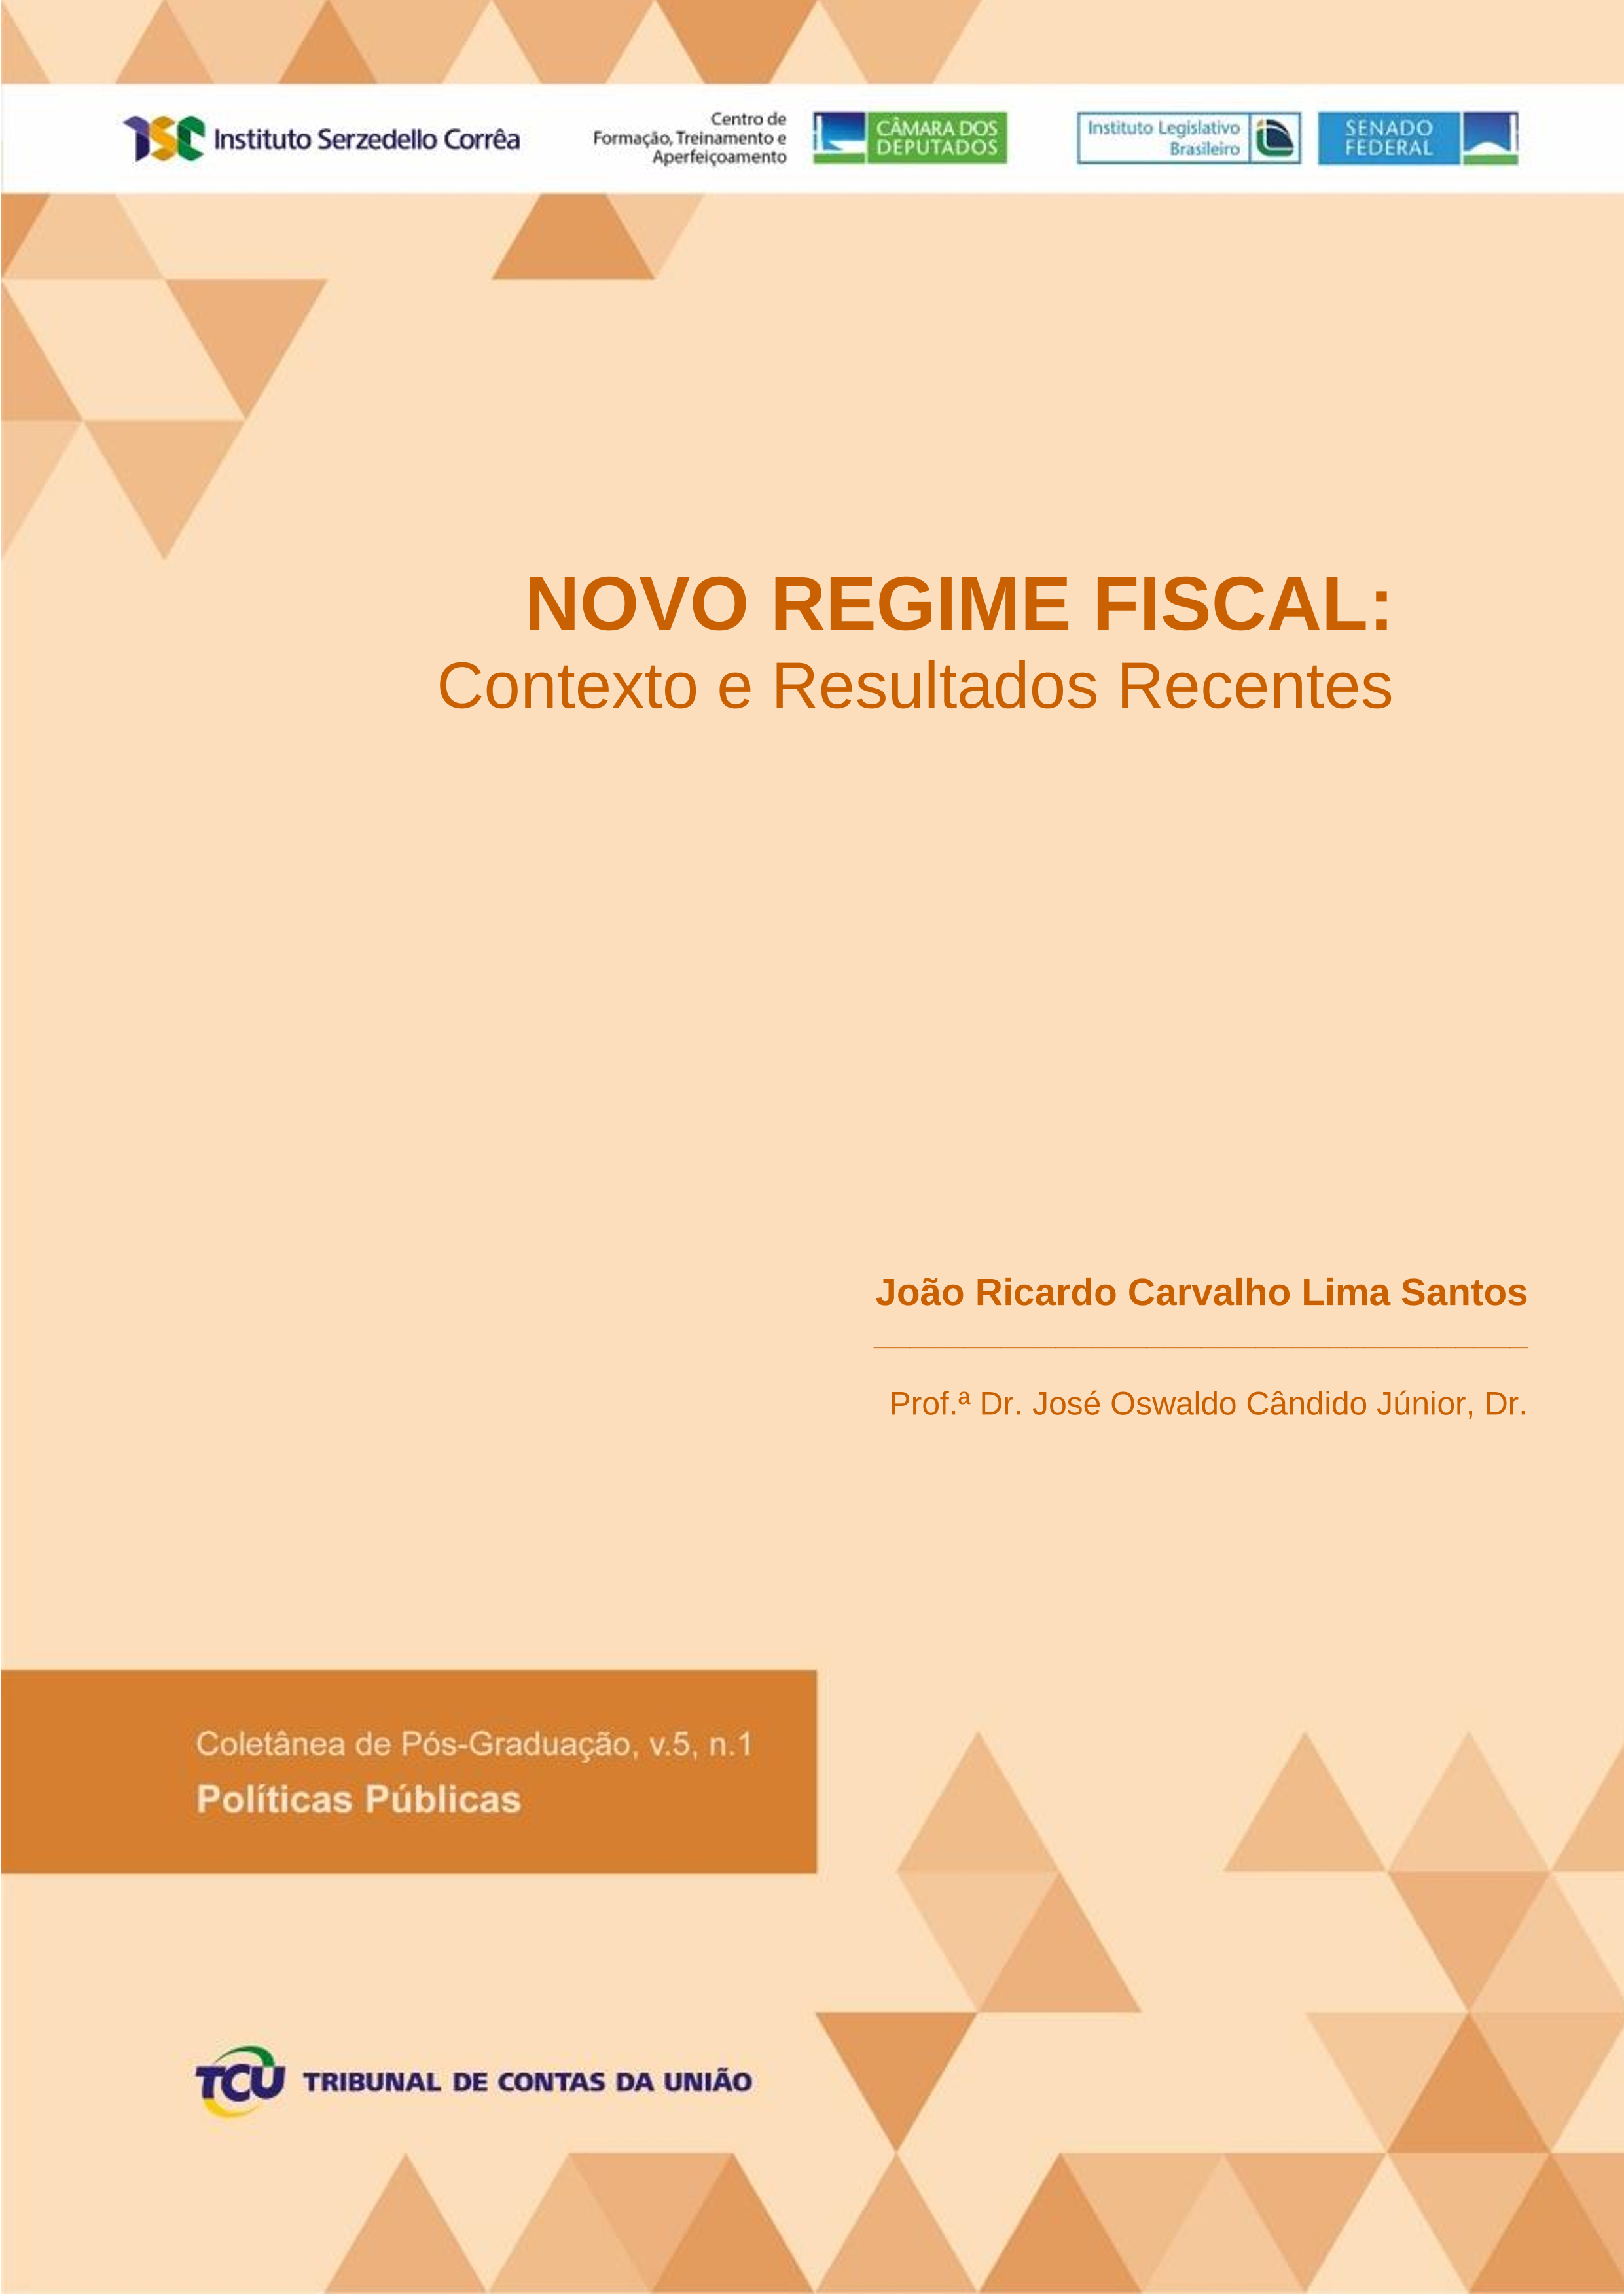 joao ricardo - novo regime fiscal final.png